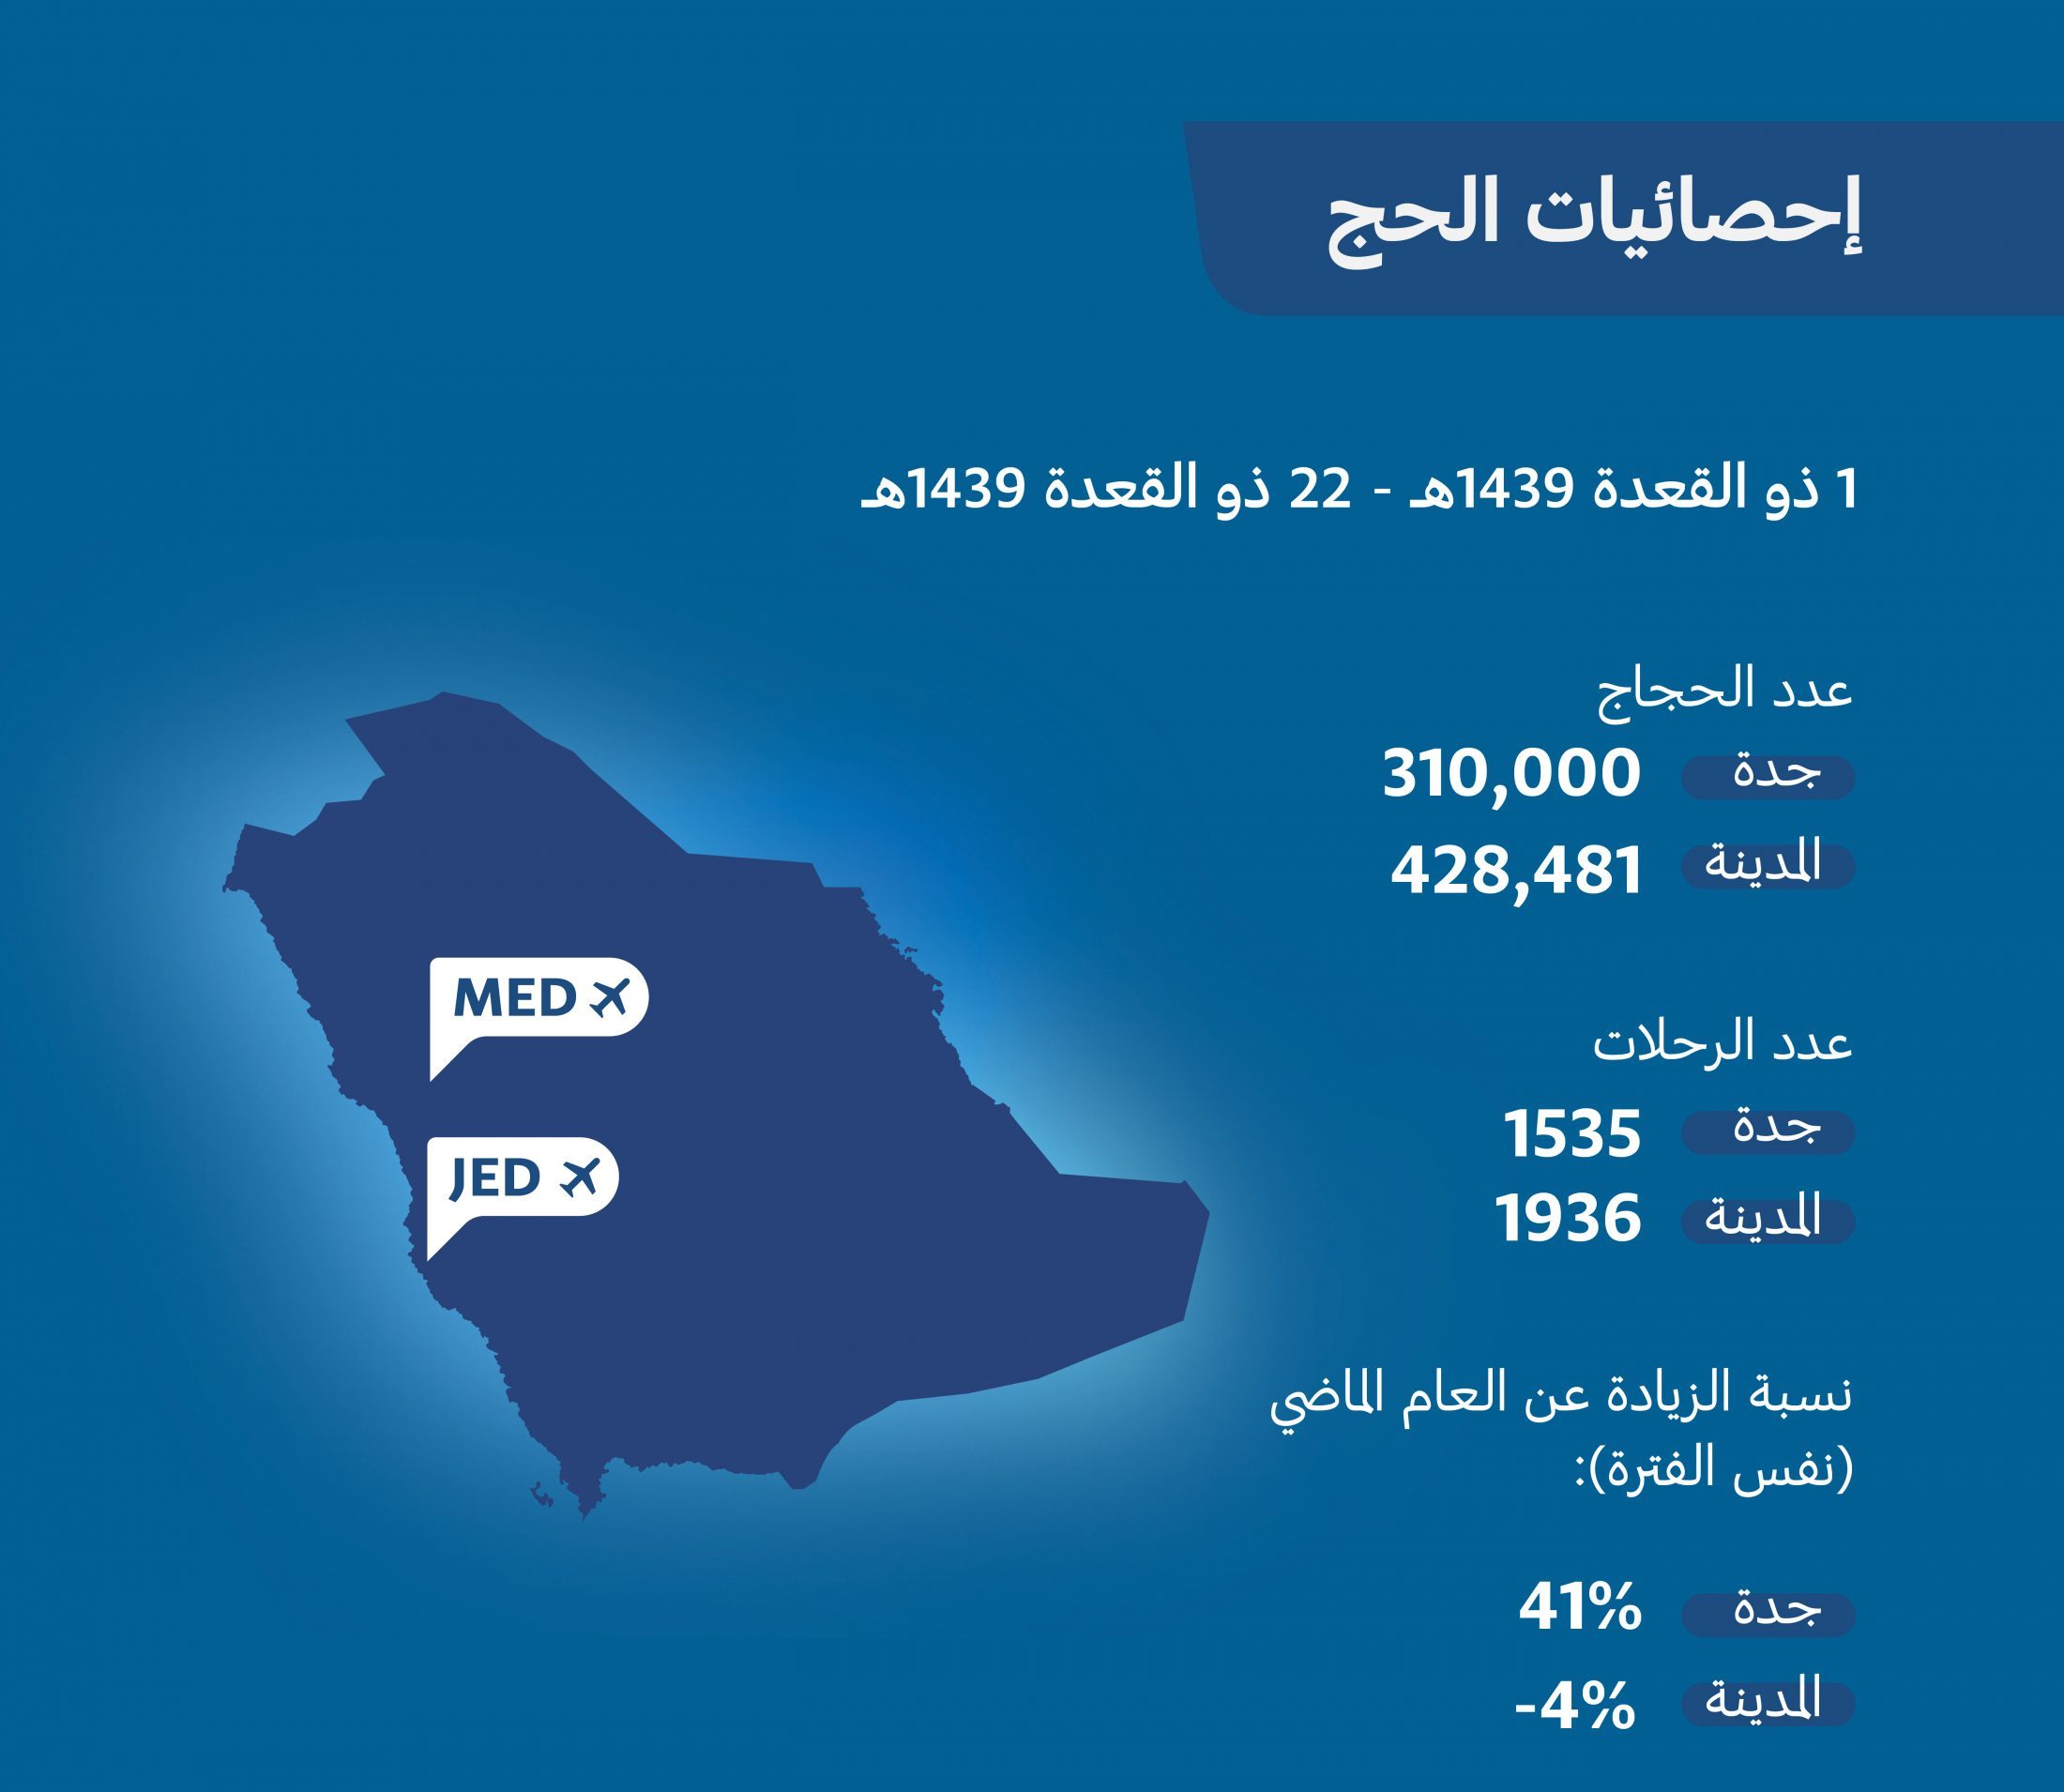 وصول 738 ألف حاج جواً عبر مطاري جدة والمدينة المنورة